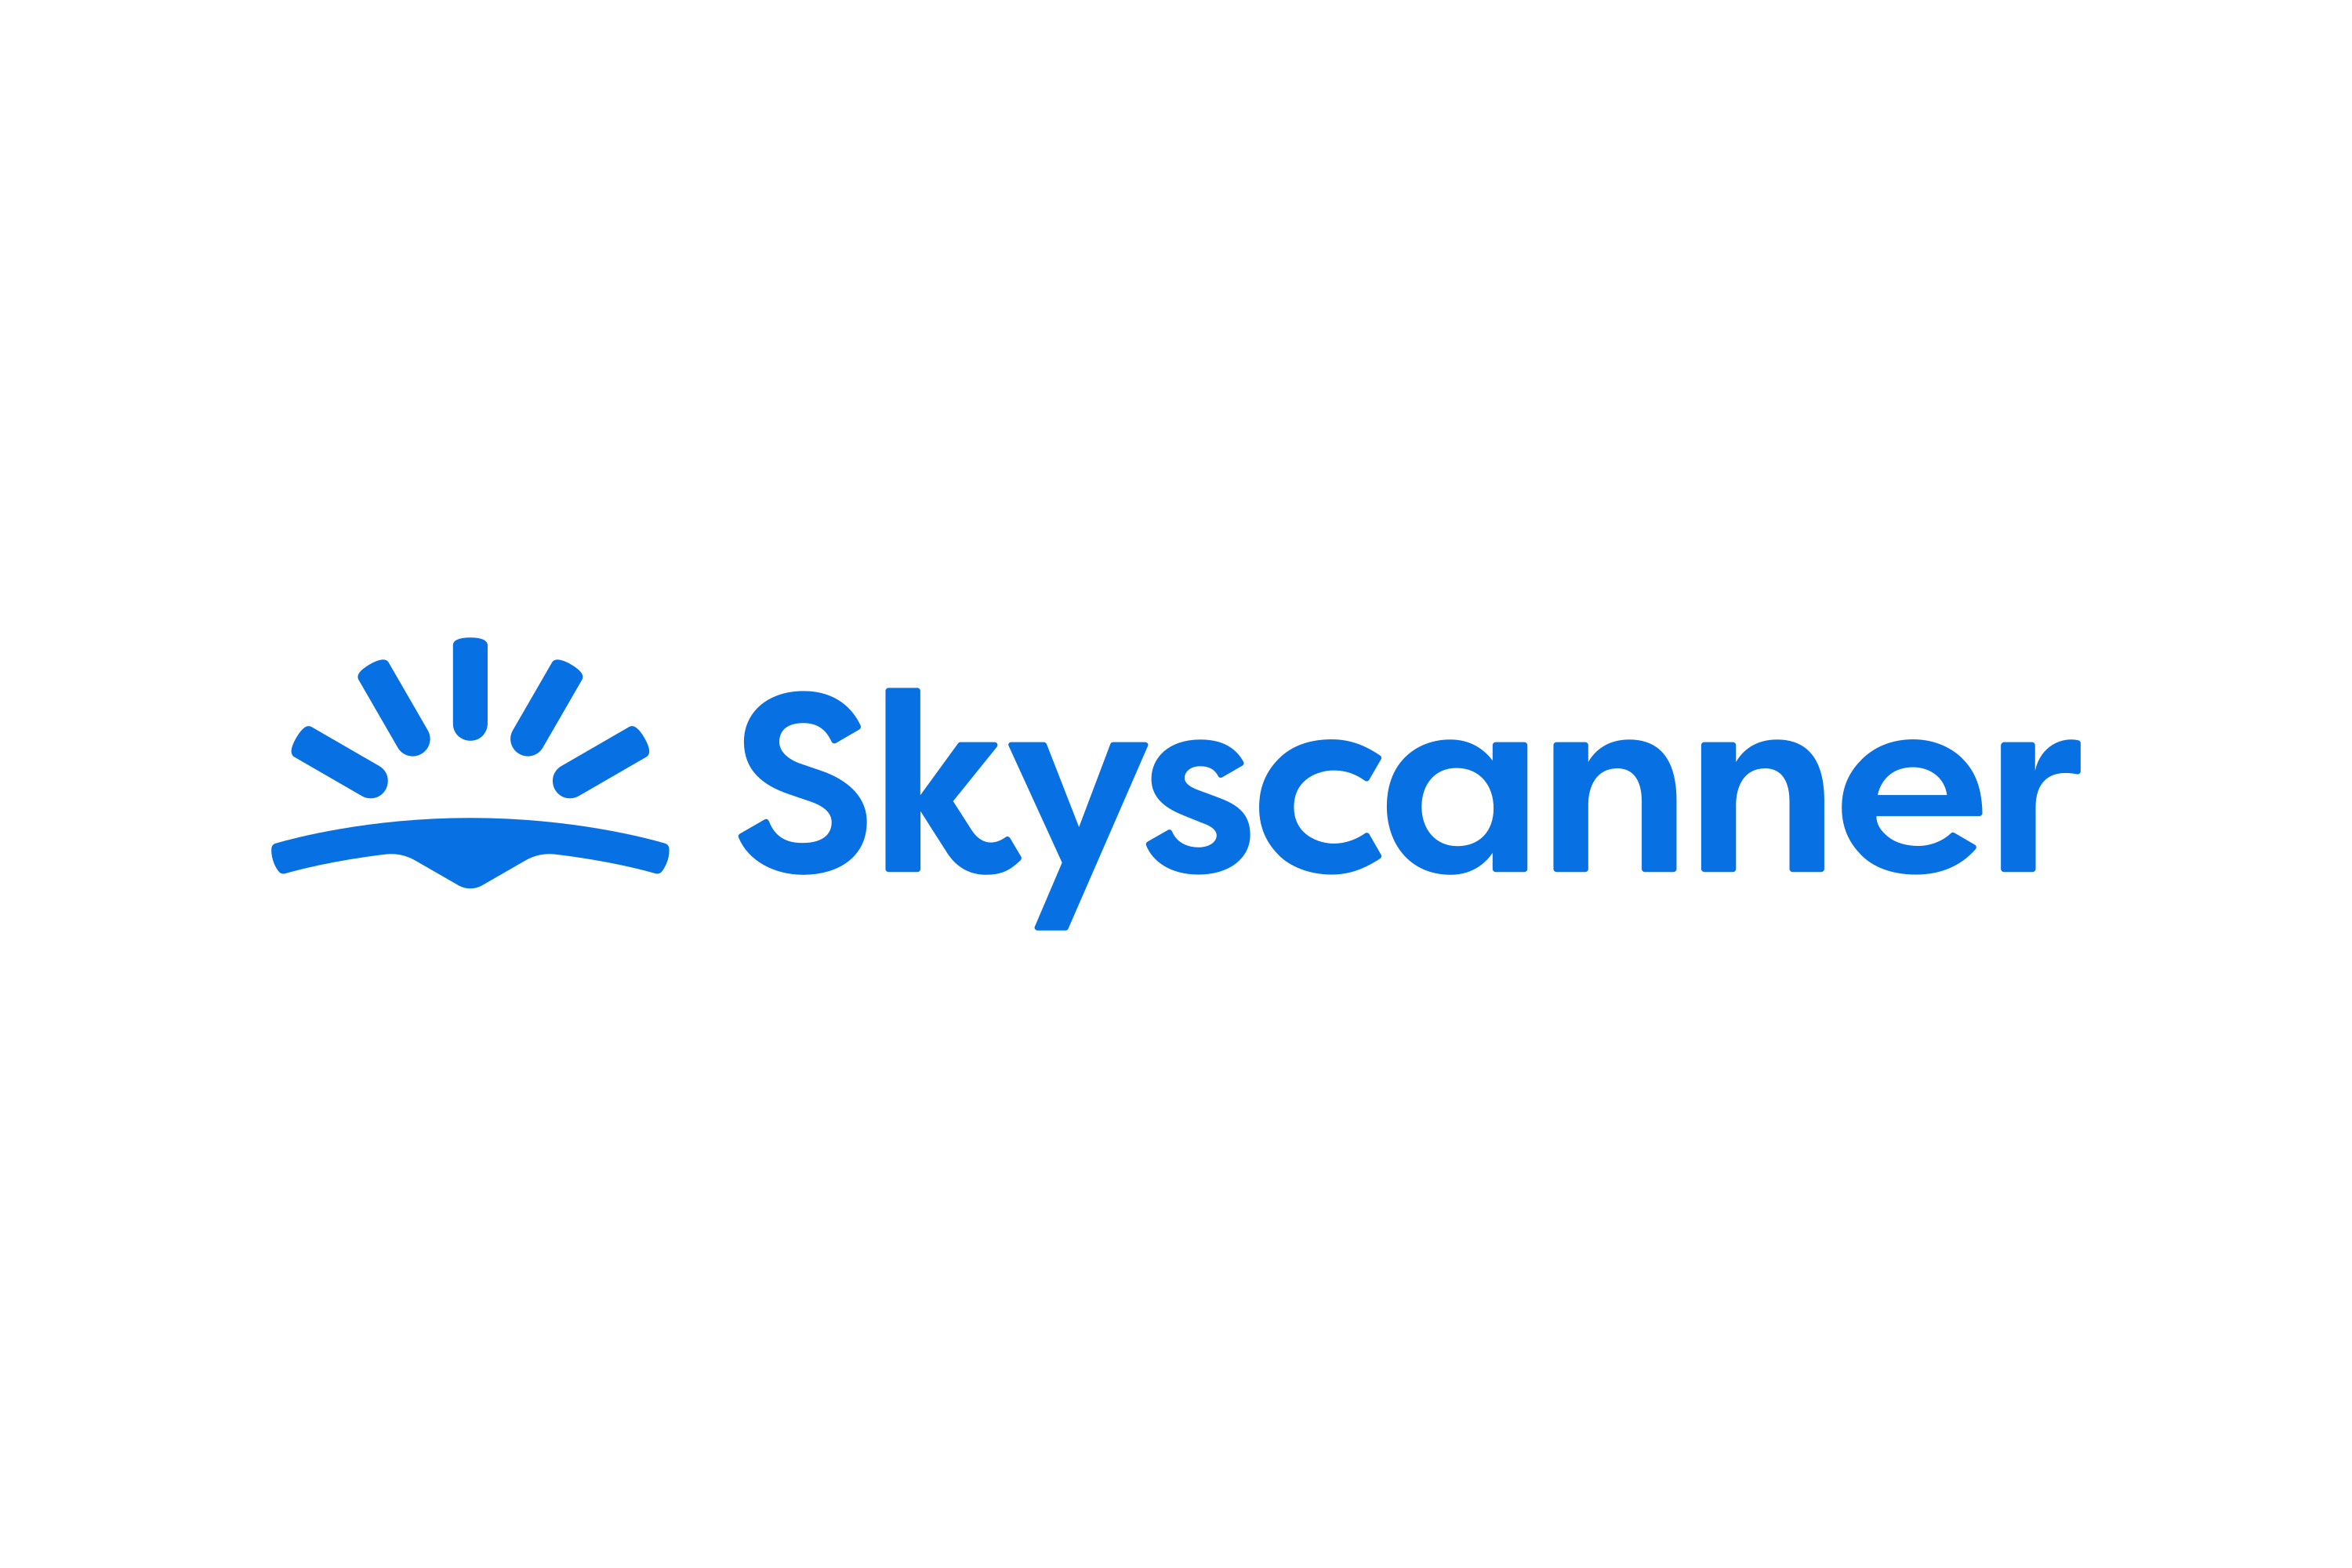 Download Skyscanner Logo in SVG Vector or PNG File Format - Logo.wine